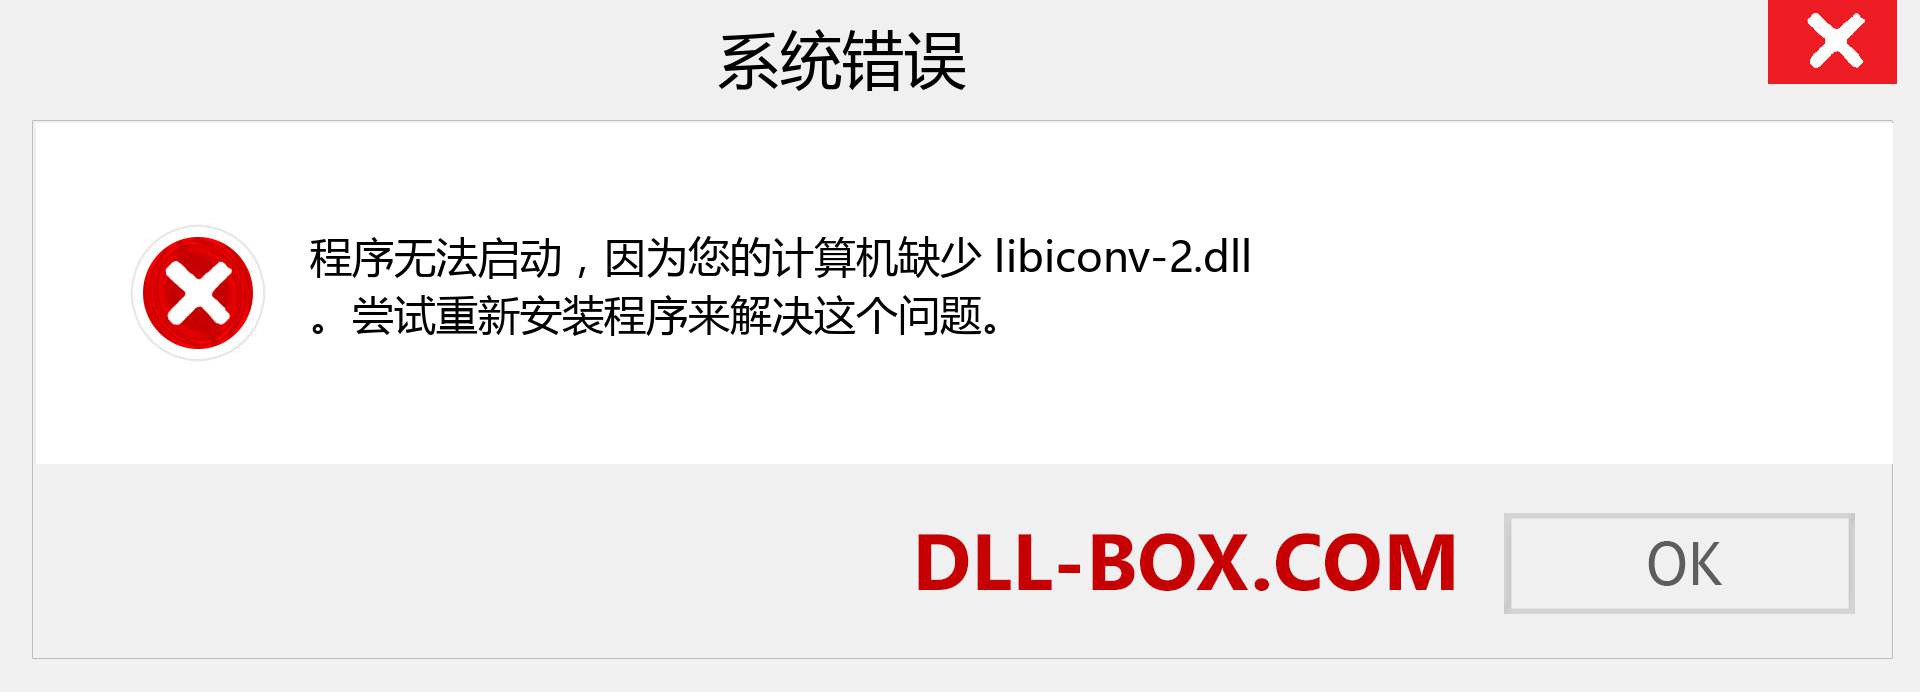 libiconv-2.dll 文件丢失？。 适用于 Windows 7、8、10 的下载 - 修复 Windows、照片、图像上的 libiconv-2 dll 丢失错误